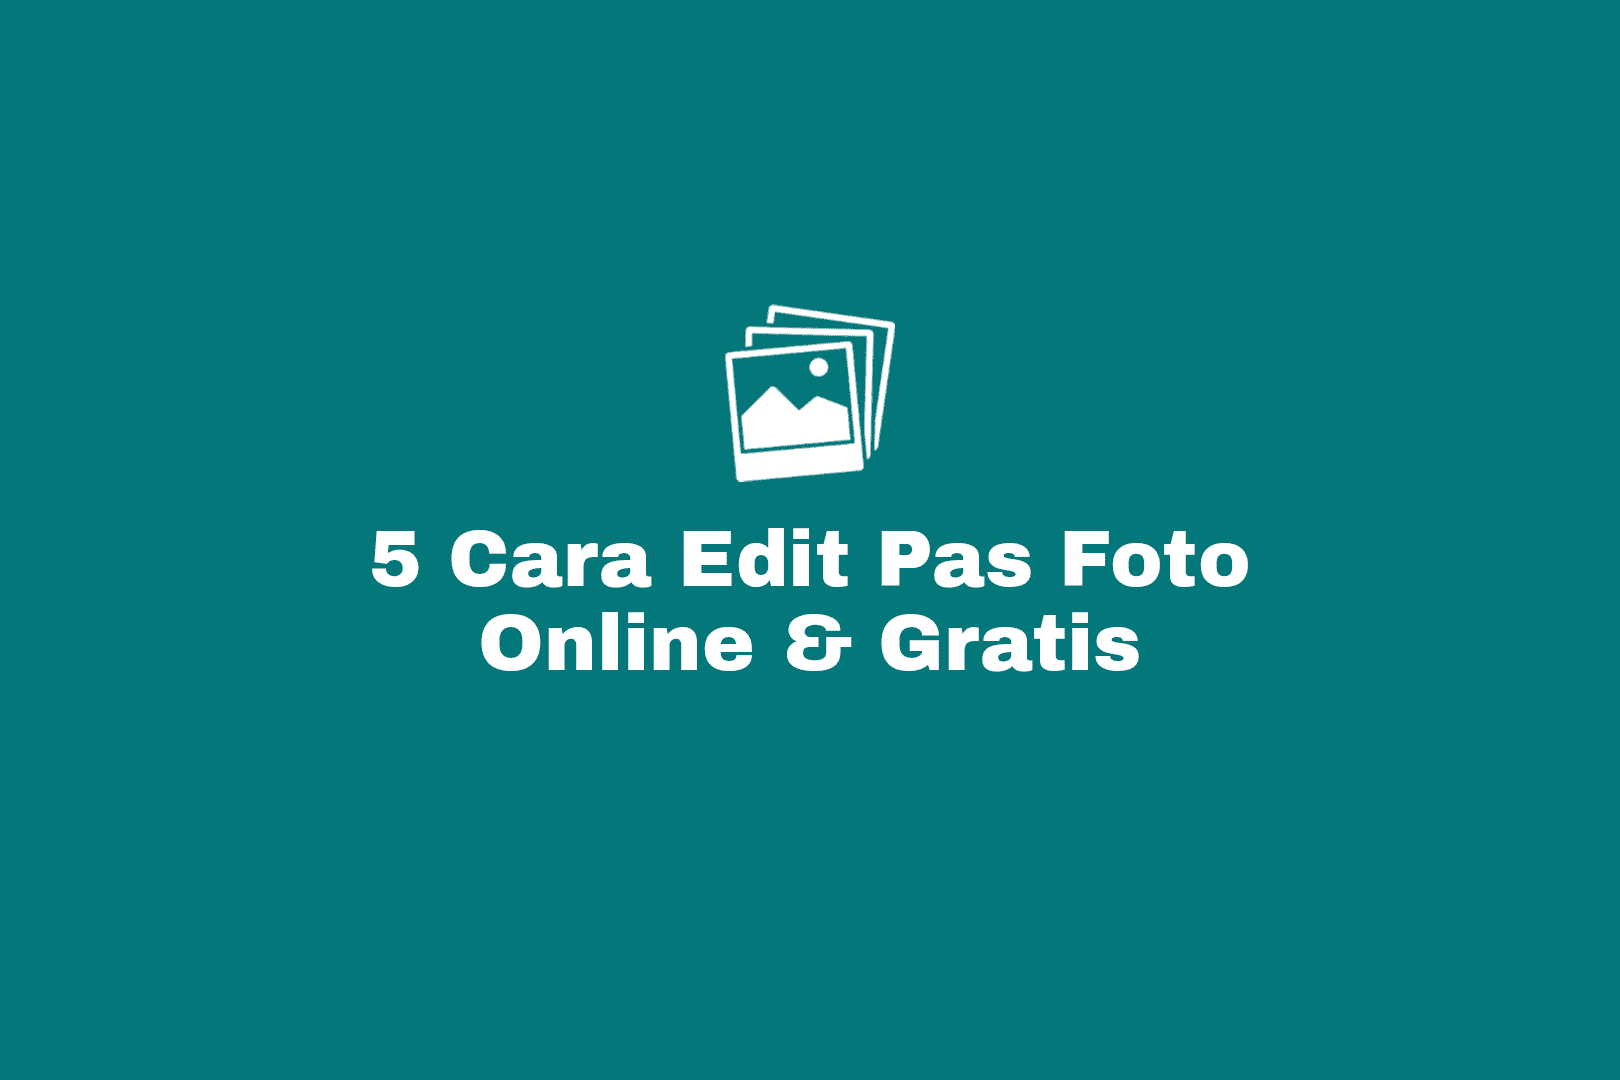 cara membuat dan edit pas foto online gratis menjadi ukuran 2x3, 3x4, 4x6